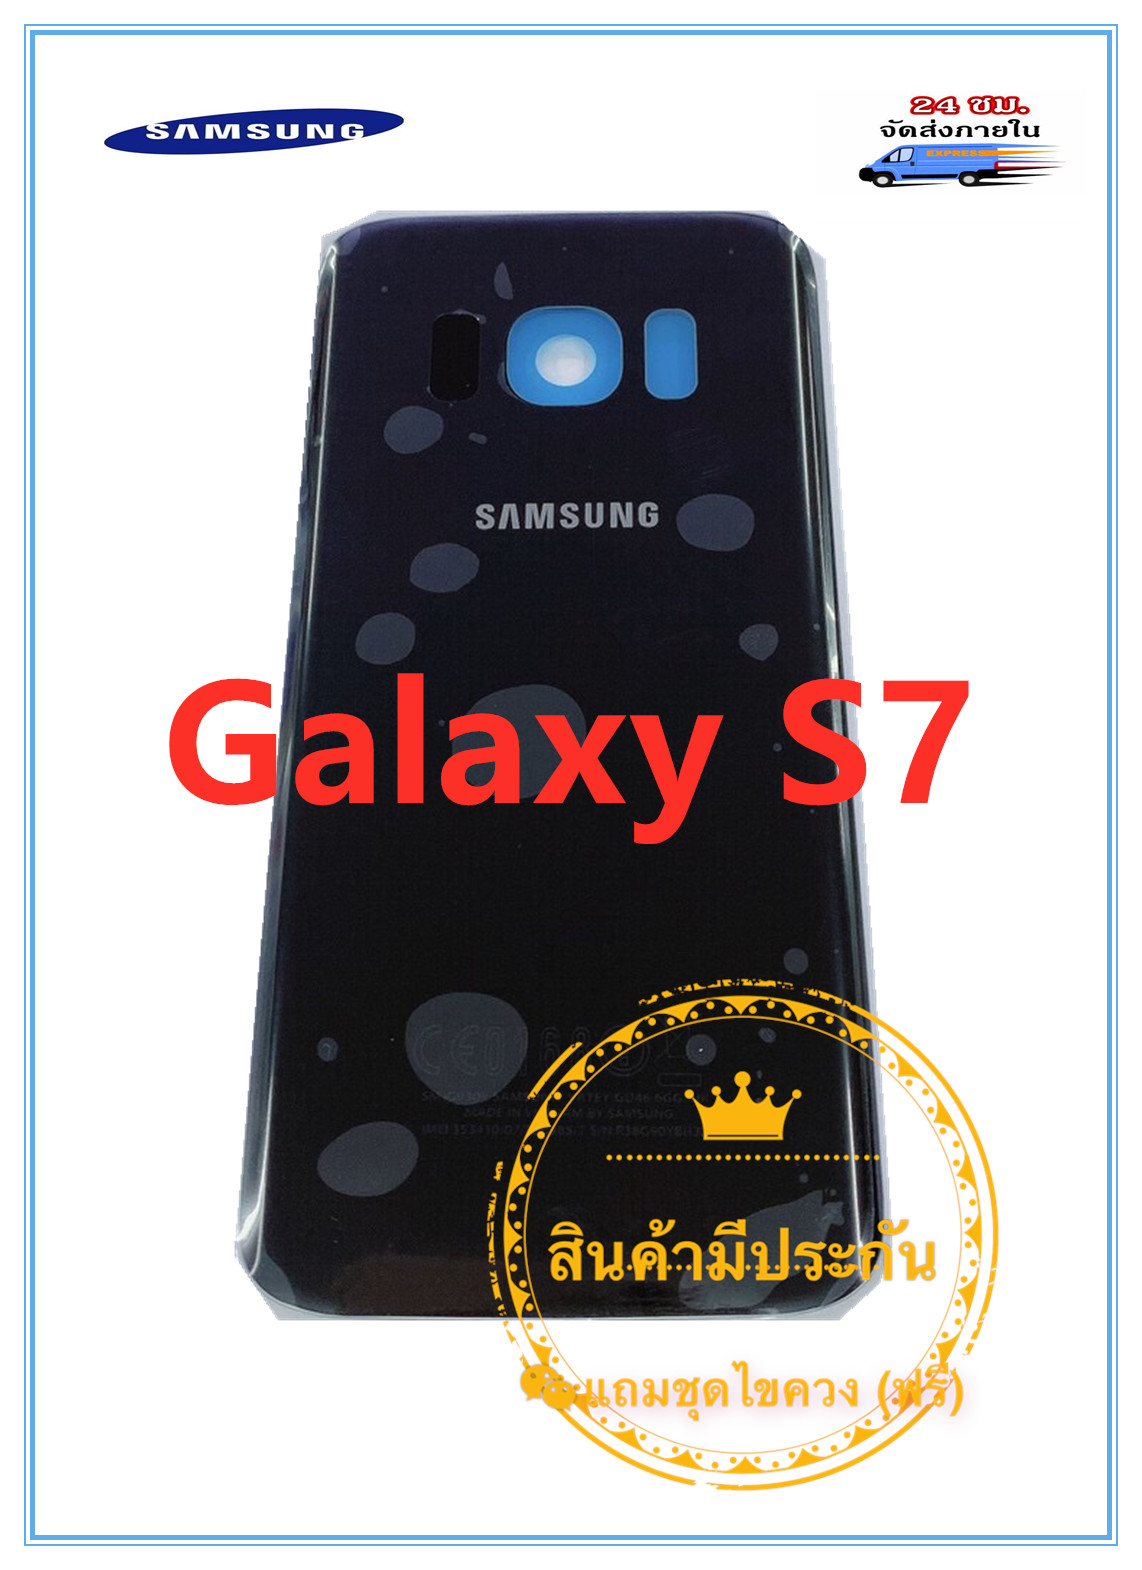 ฝาหลัง Samsung Galaxy S7 แถมฟรีชุดไขควง สี ดำ สี ดำรูปแบบรุ่นที่ีรองรับ Galaxy S7